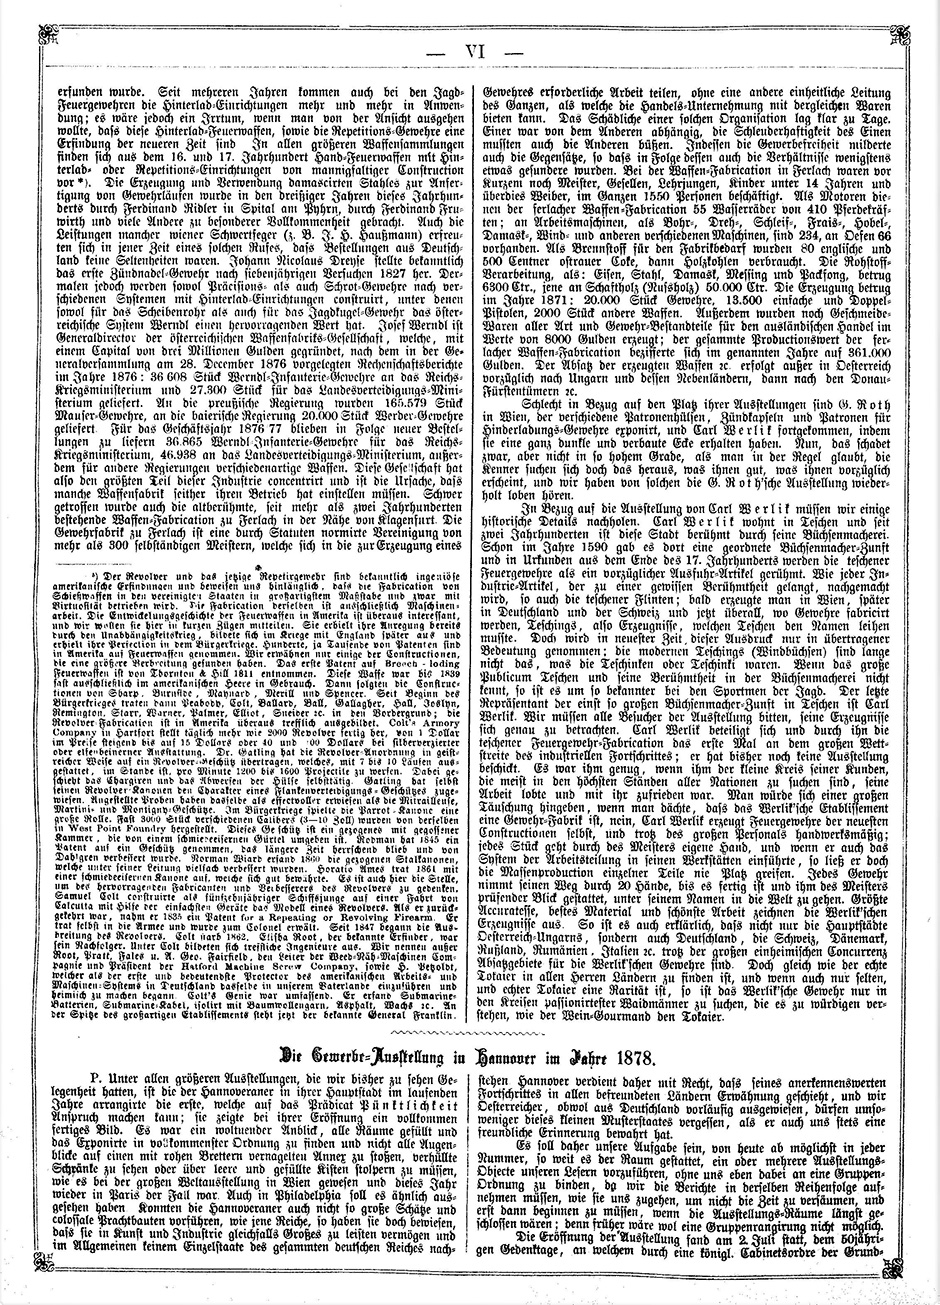 Archivbild 6: Beilage zur: "Österreichischen Gartenlaube" vom 19.9.1878